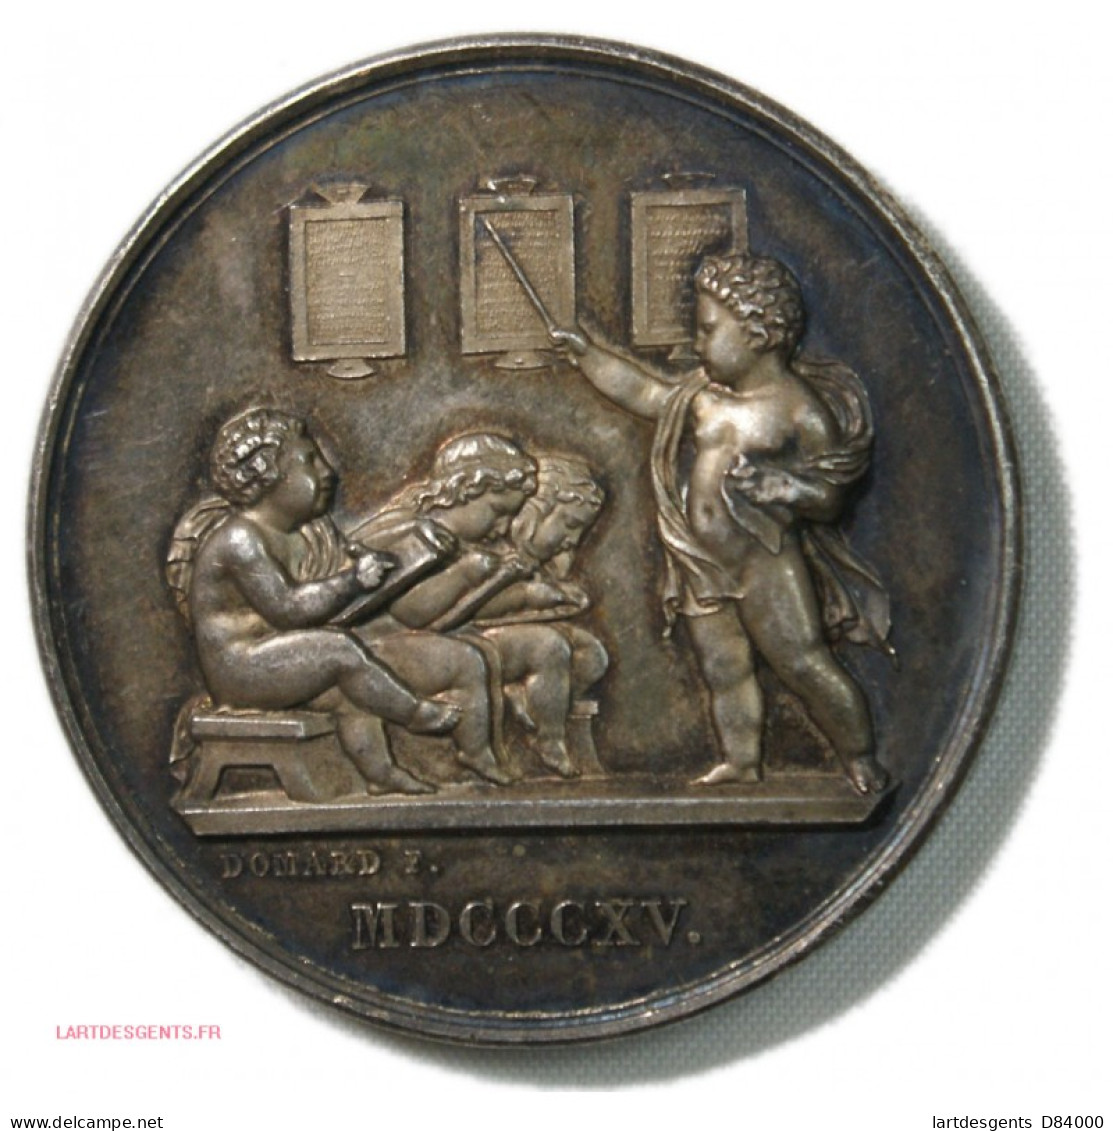 Médaille Argent STE INST. ELEMENTAIRE 1815, Attribué Par DOMARD F. Lartdesgents - Professionnels / De Société